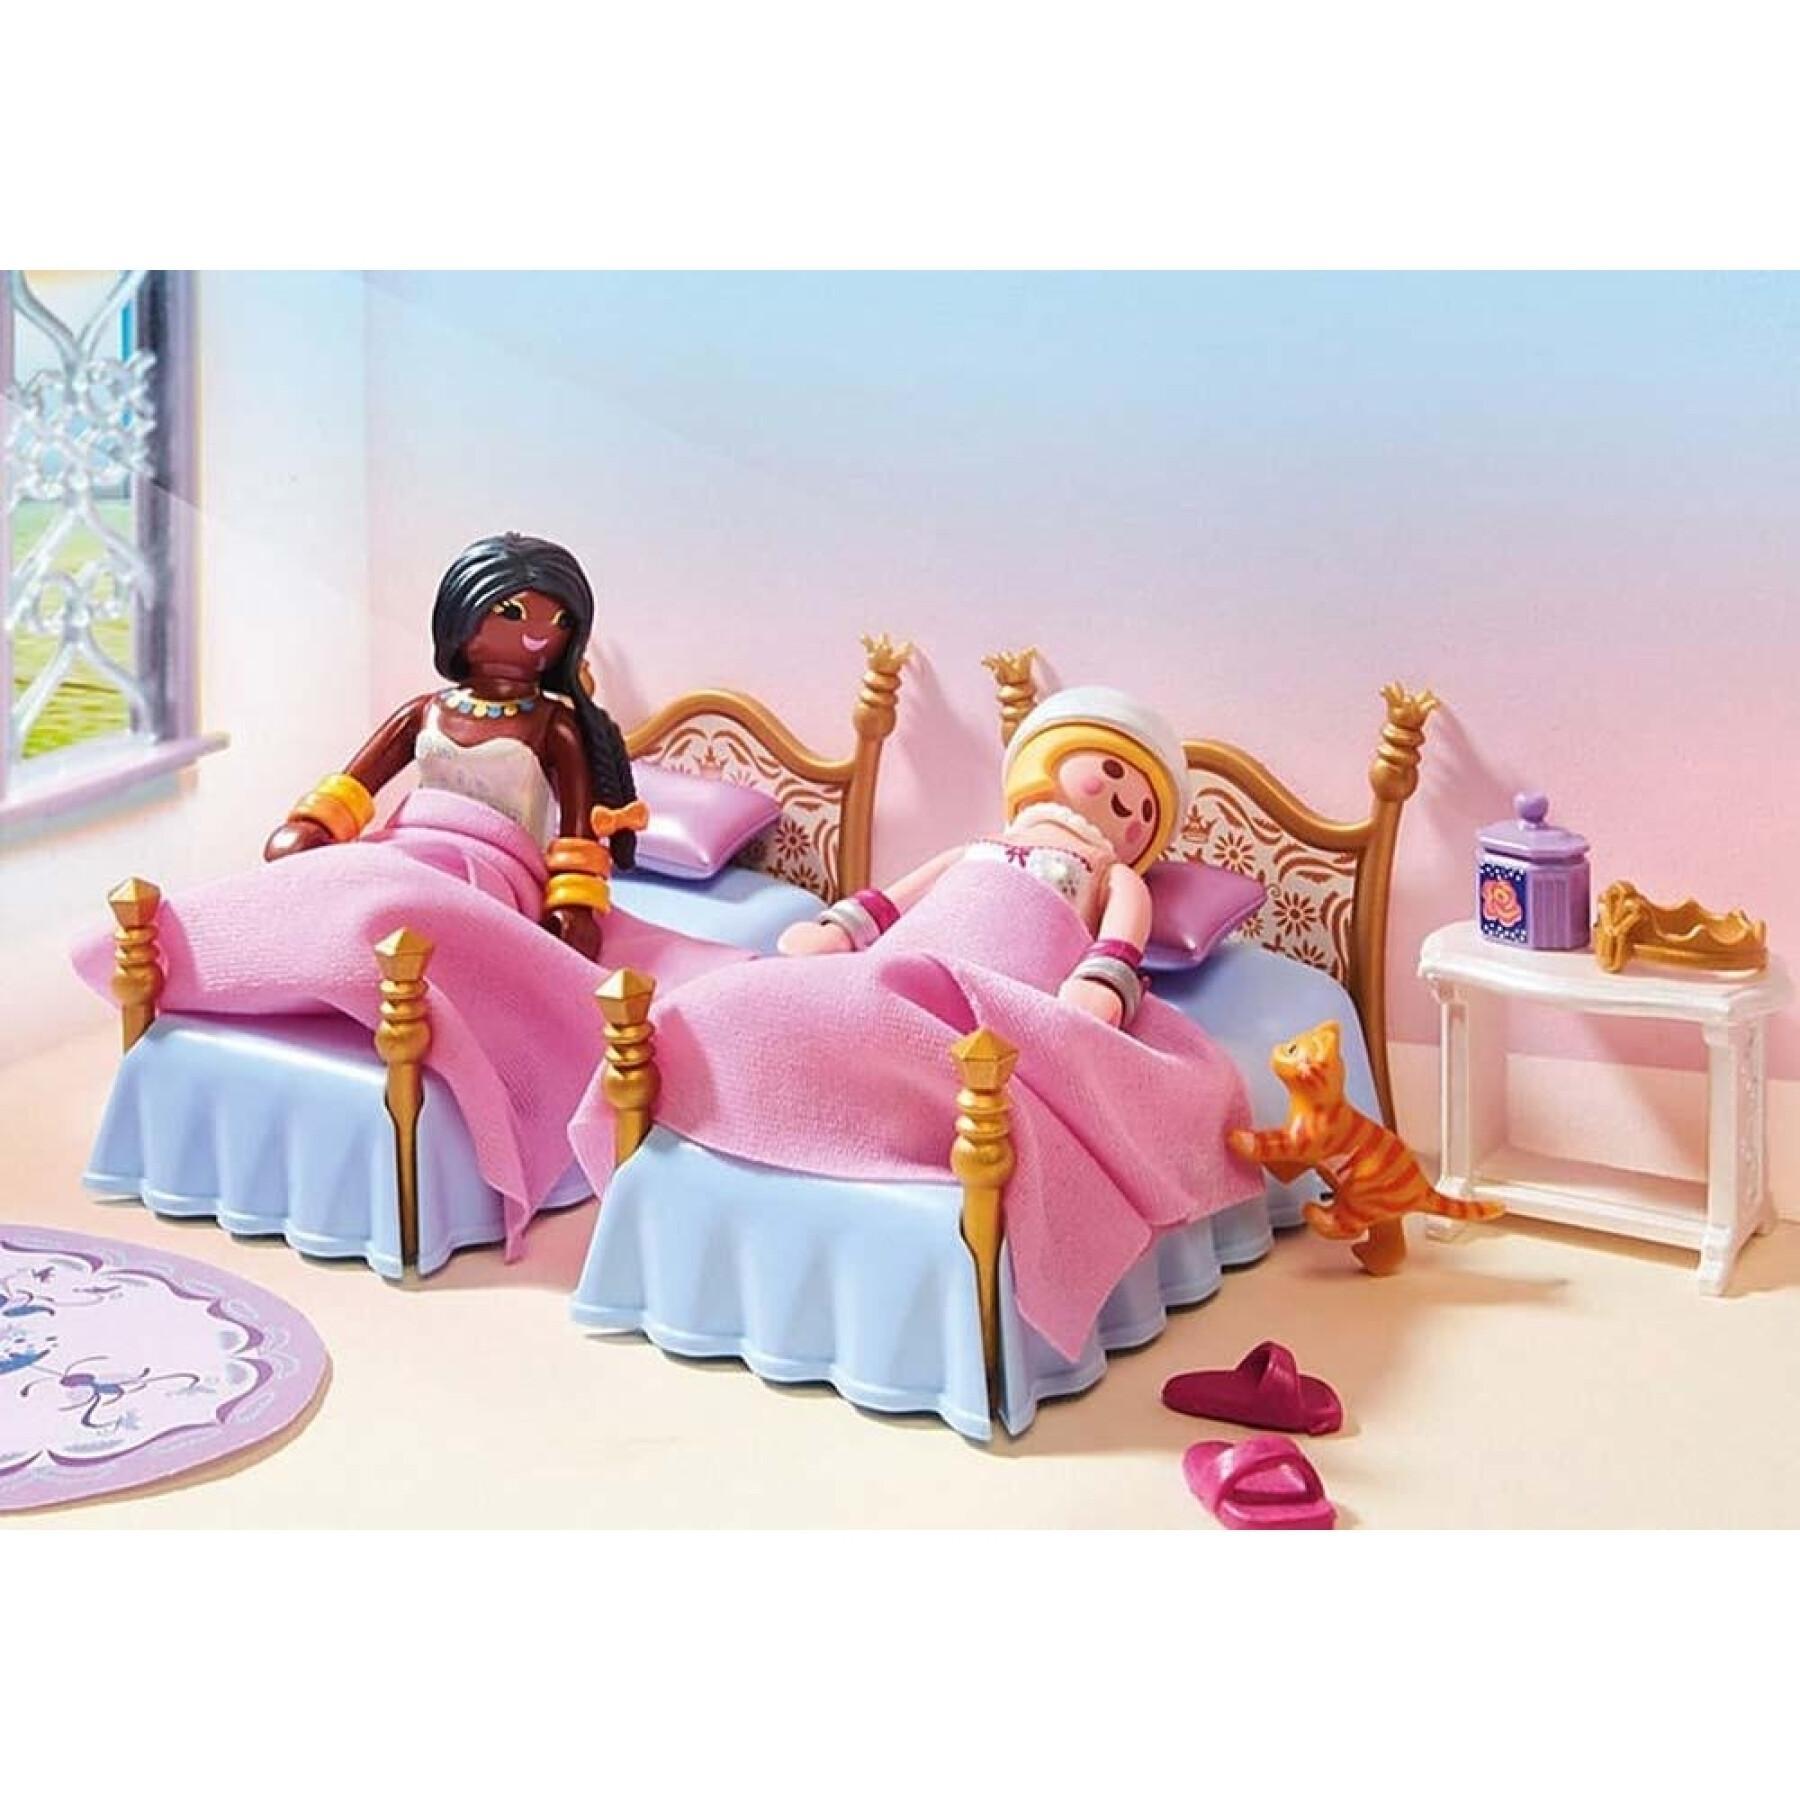 Prinsessor kungliga sovrum Playmobil